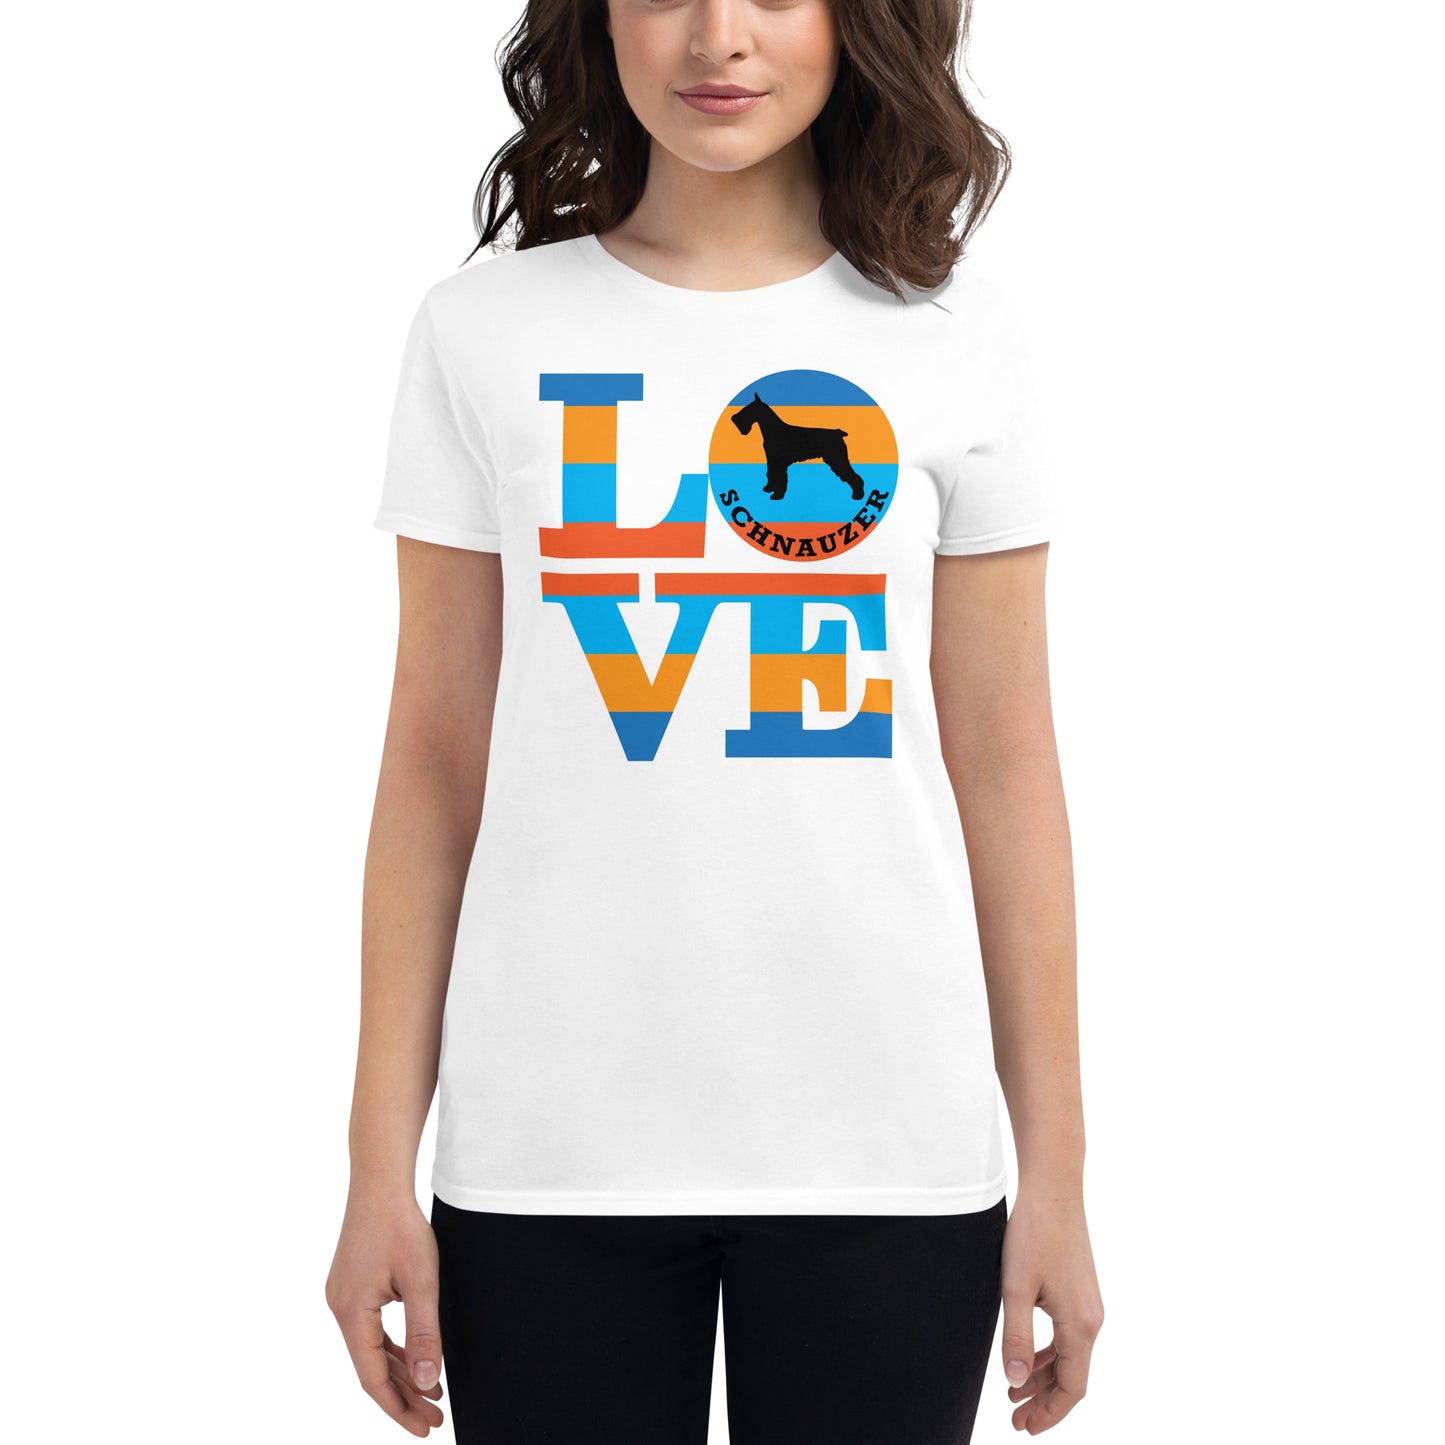 Love Schnauzer Women's short sleeve t-shirt